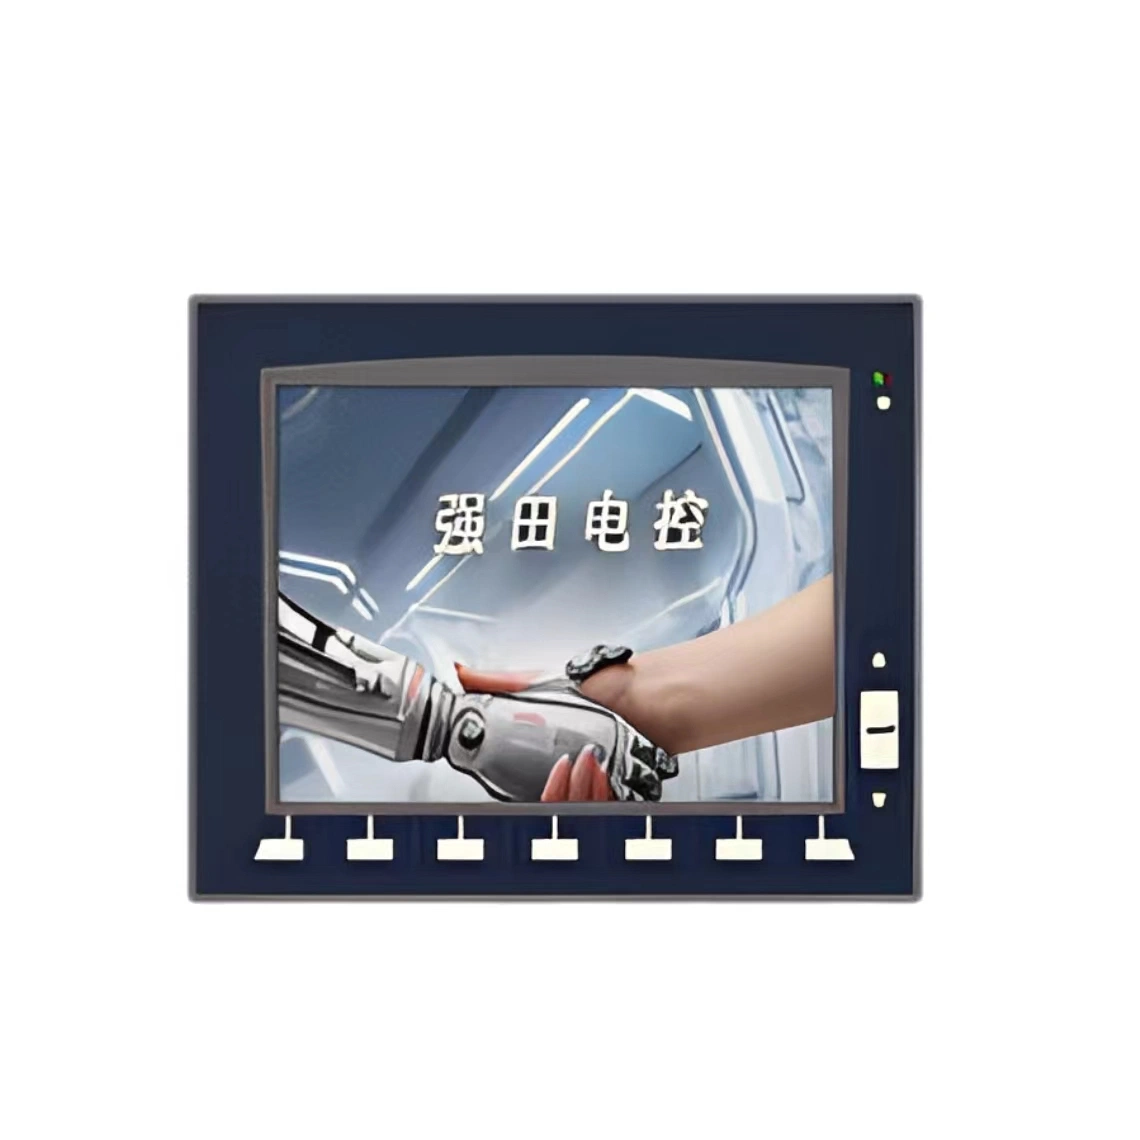 Affichage de l'alarme de commande électrique Affichage de l'information d'alarme appliqué pour les machines industrielles